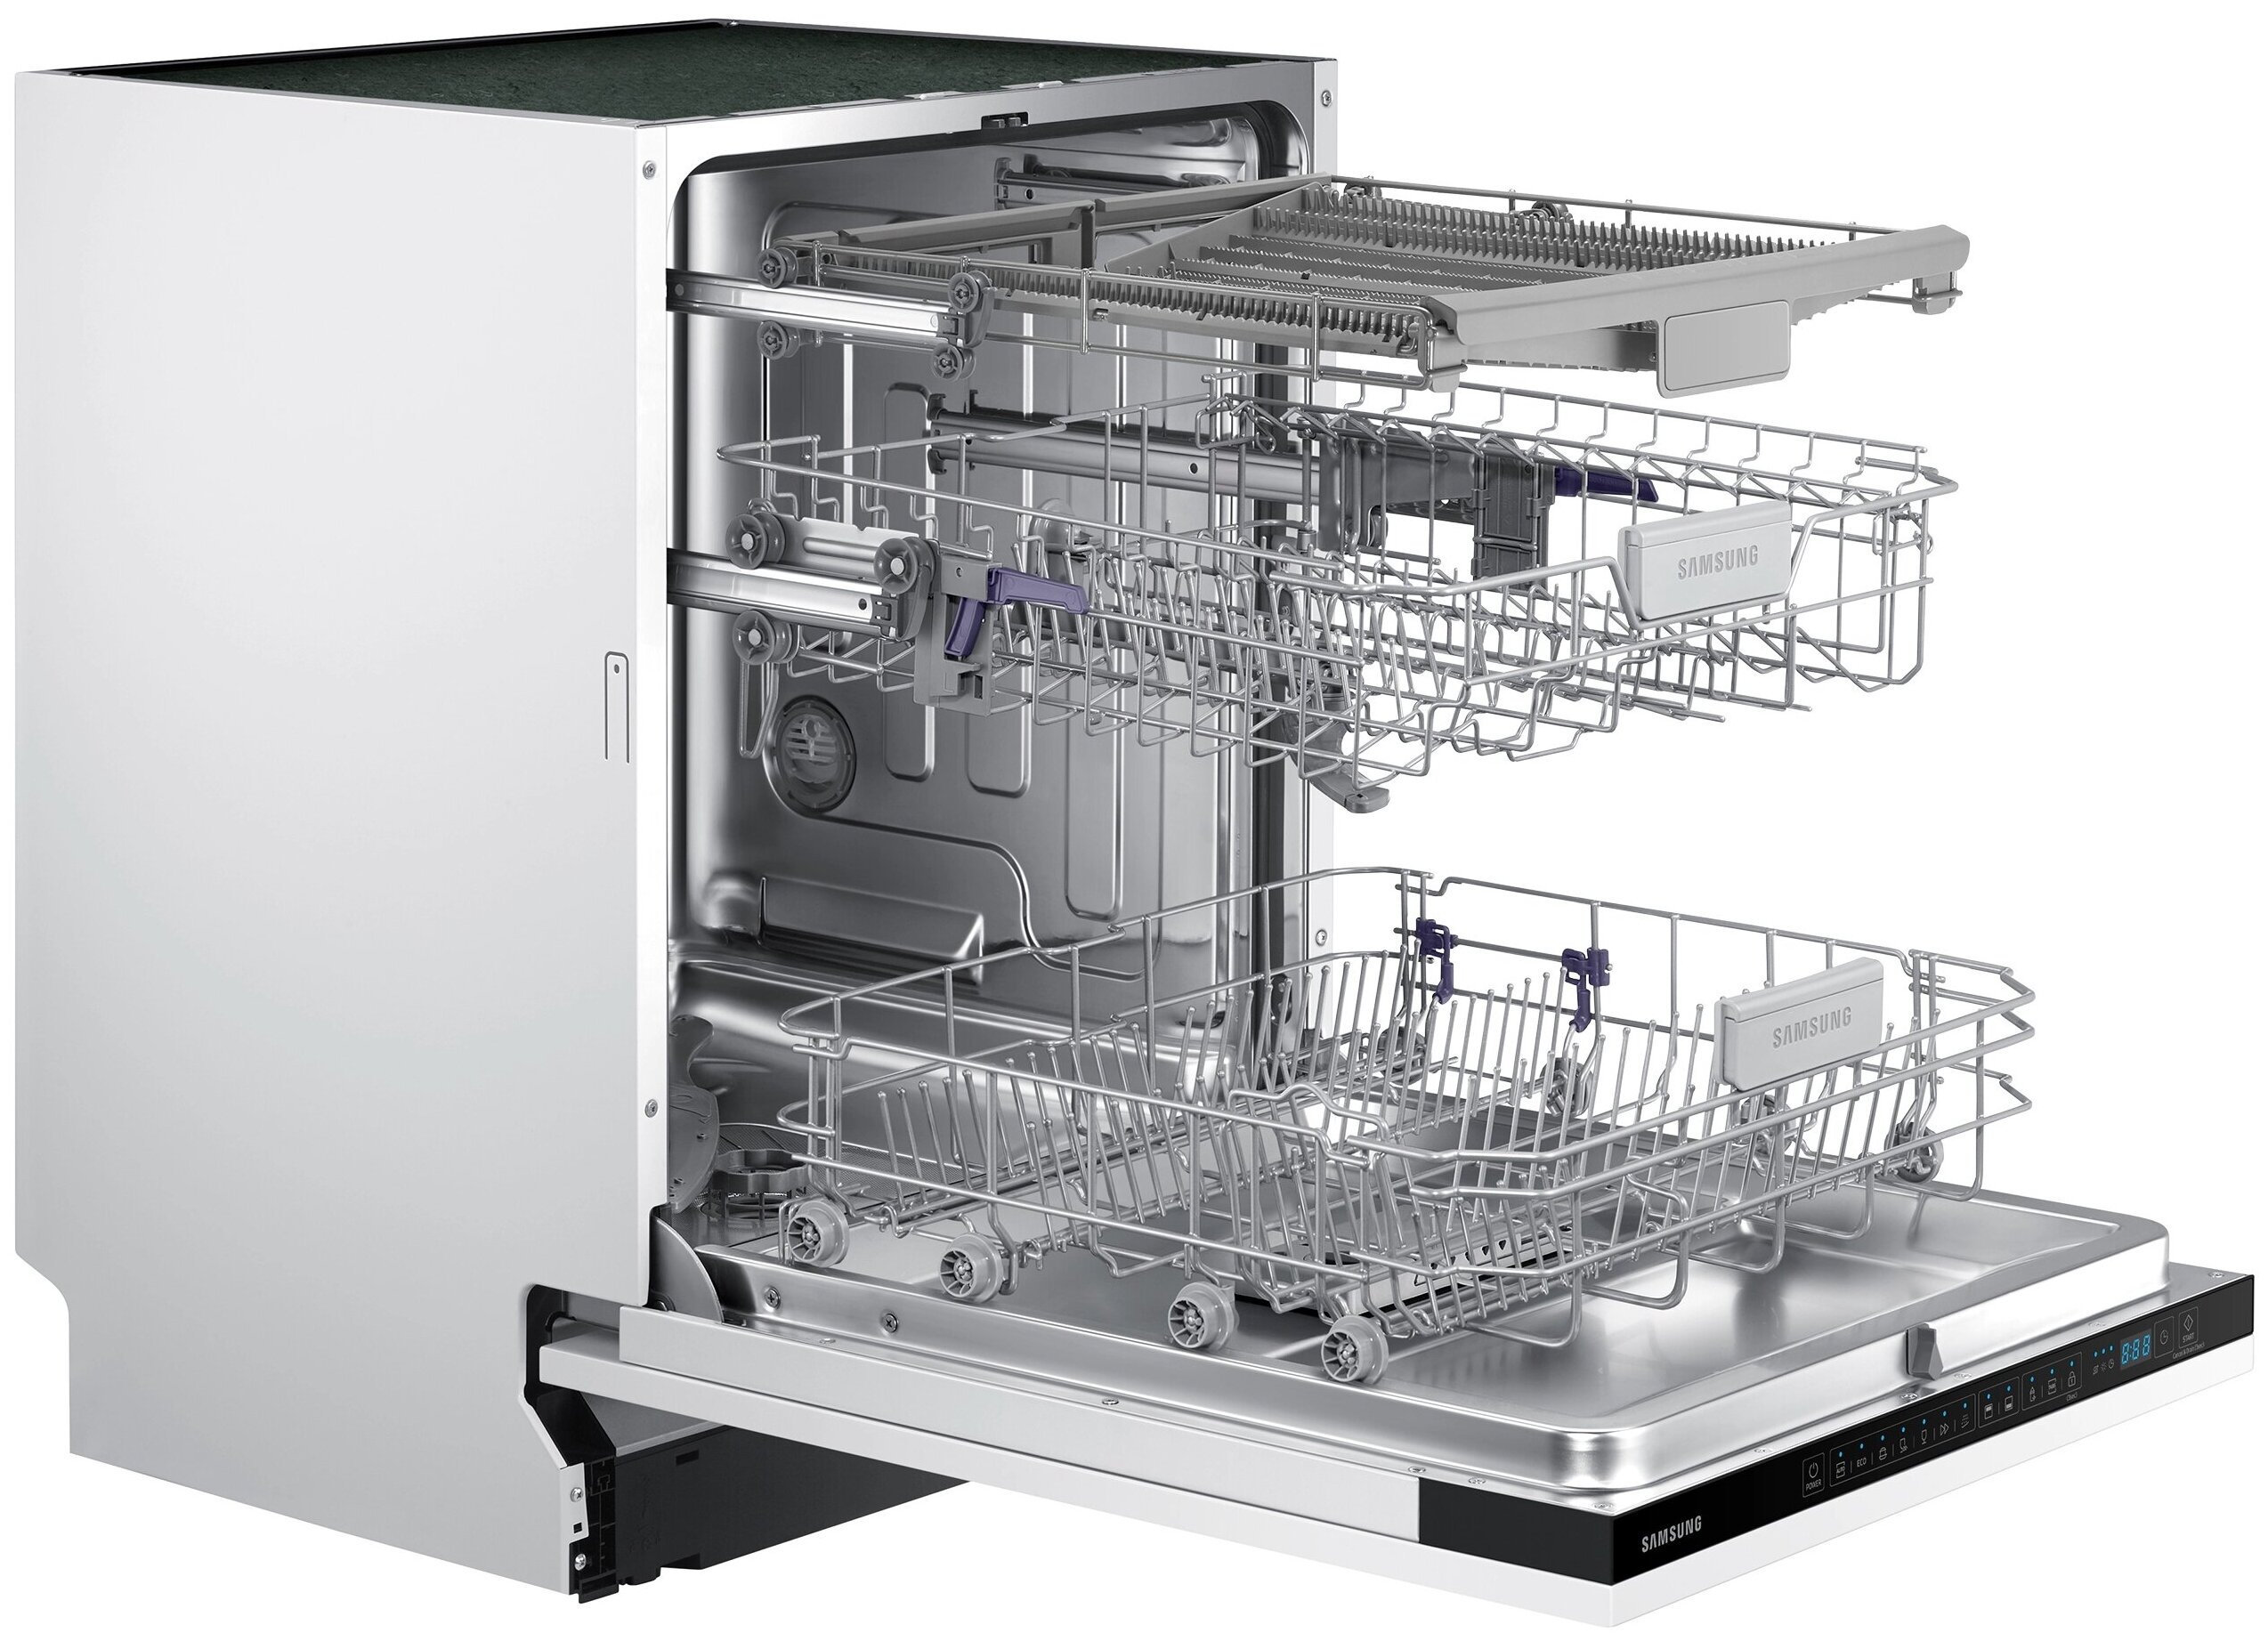 Встраиваемые посудомоечные машины samsung. Посудомоечная машина Samsung dw60m6050bb/WT. Посудомоечная машина МПК-500ф. Посудомоечная машина Samsung dw60m5050bb WT. Посудомоечная машина dw60m5050bb/WT, 60см.